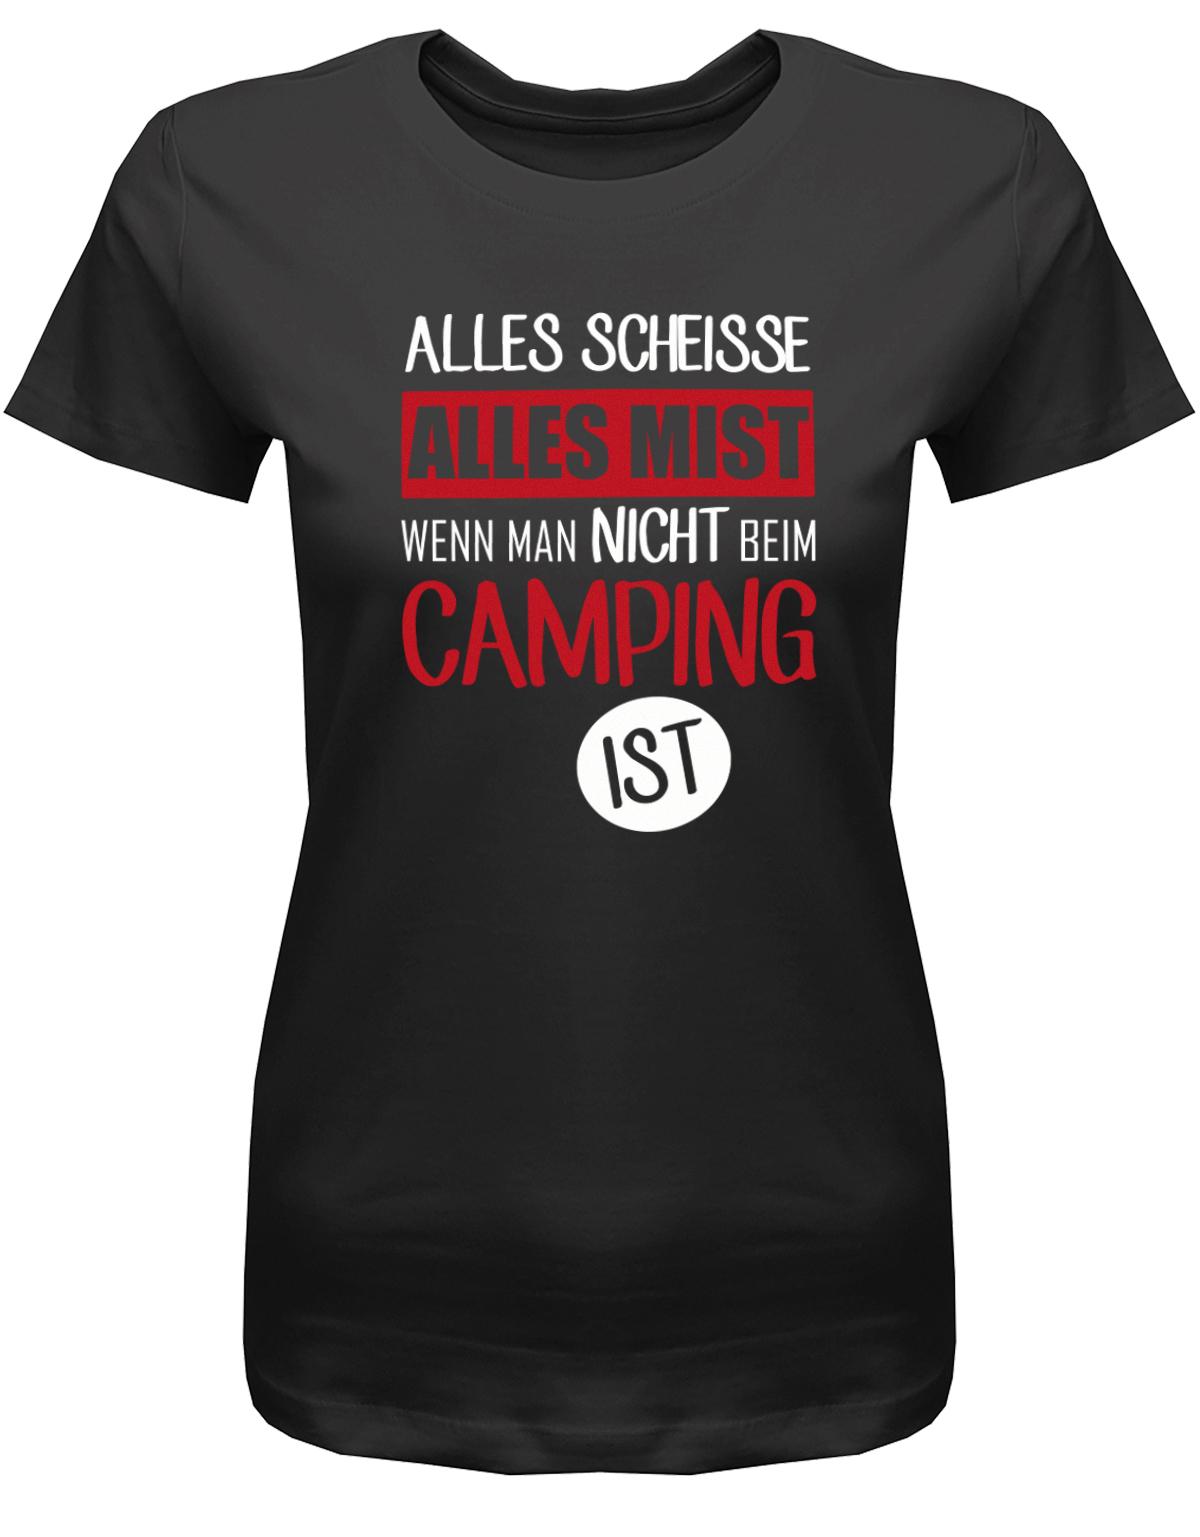 Alles-SCheisse-alles-Mist-wenn-man-nicht-bei-Camping-ist-Damen-Shirt-Schwarz7Eb1NCf5vpTwZ